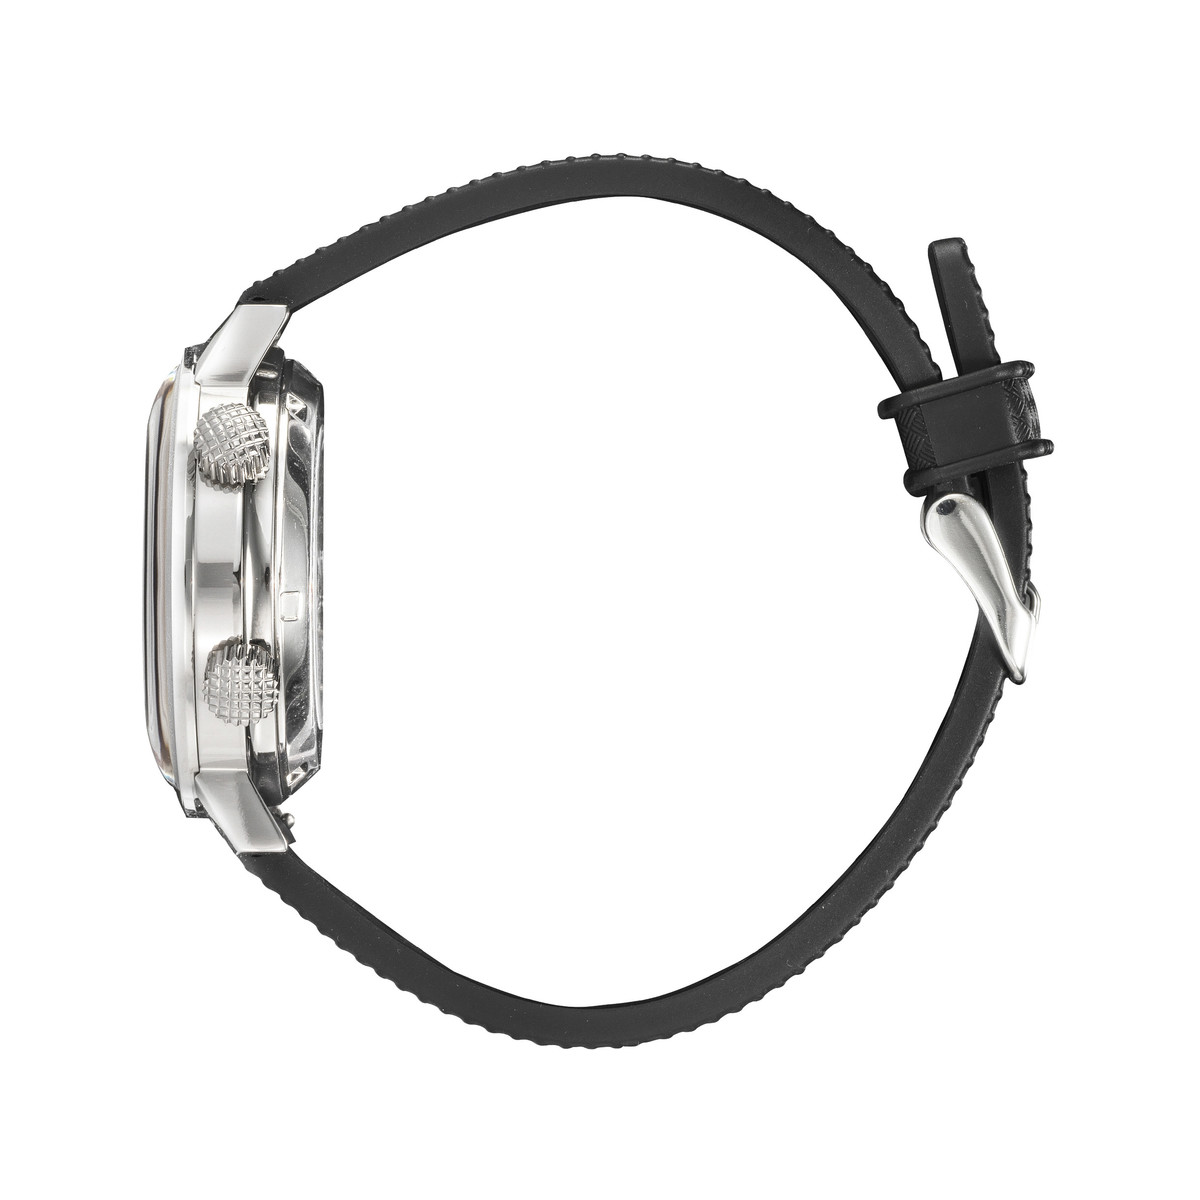 Montre Grande Nautic automatique boitier acier bracelet noir - vue 2